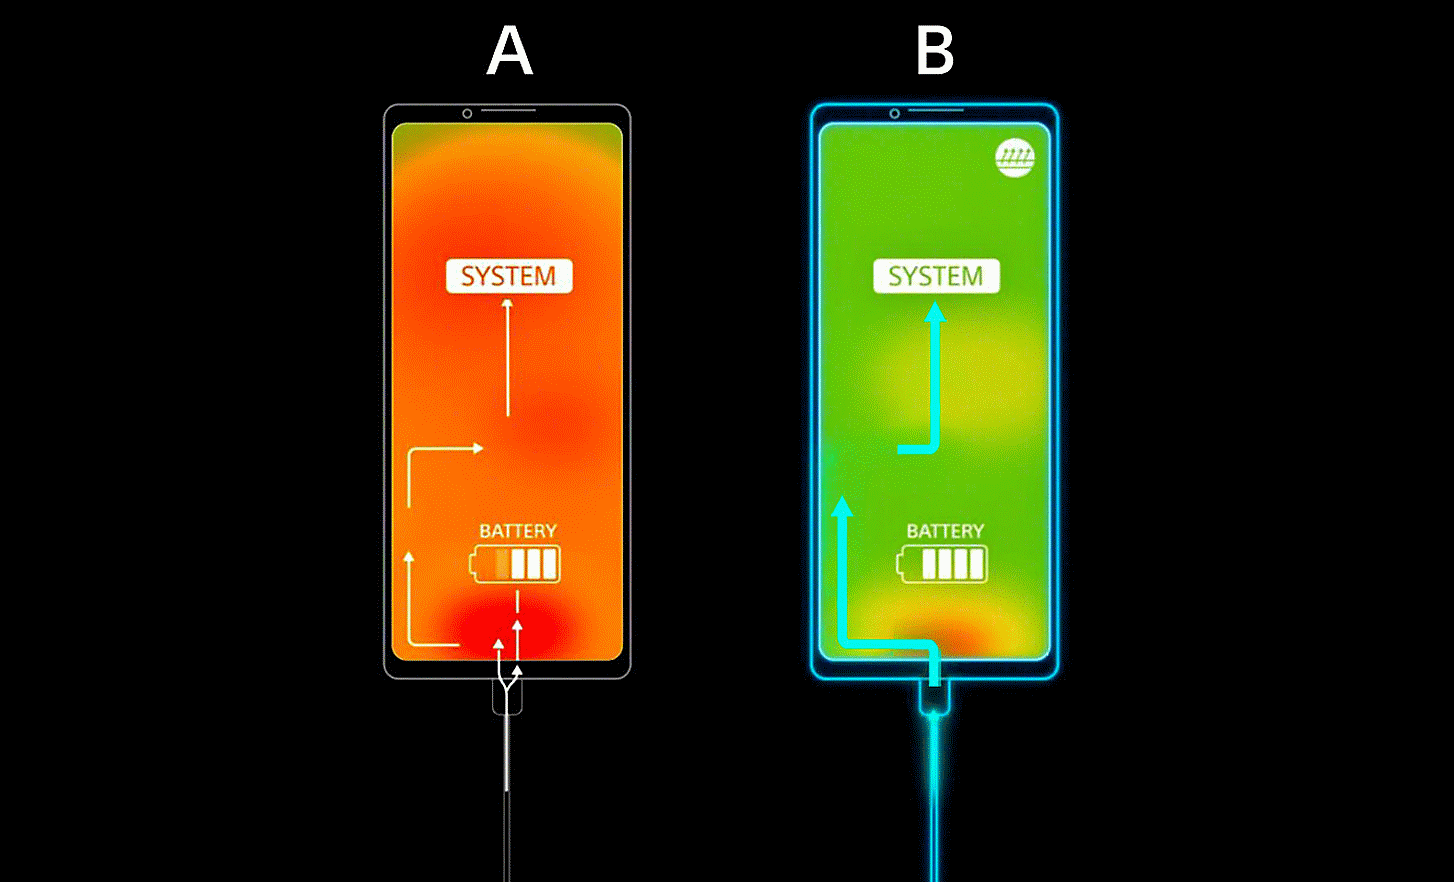 Le téléphone A présente un arrière-plan orange avec des flèches dirigées vers la batterie et le système, tandis que le téléphone B présente un arrière-plan vert et des flèches désignant uniquement le système